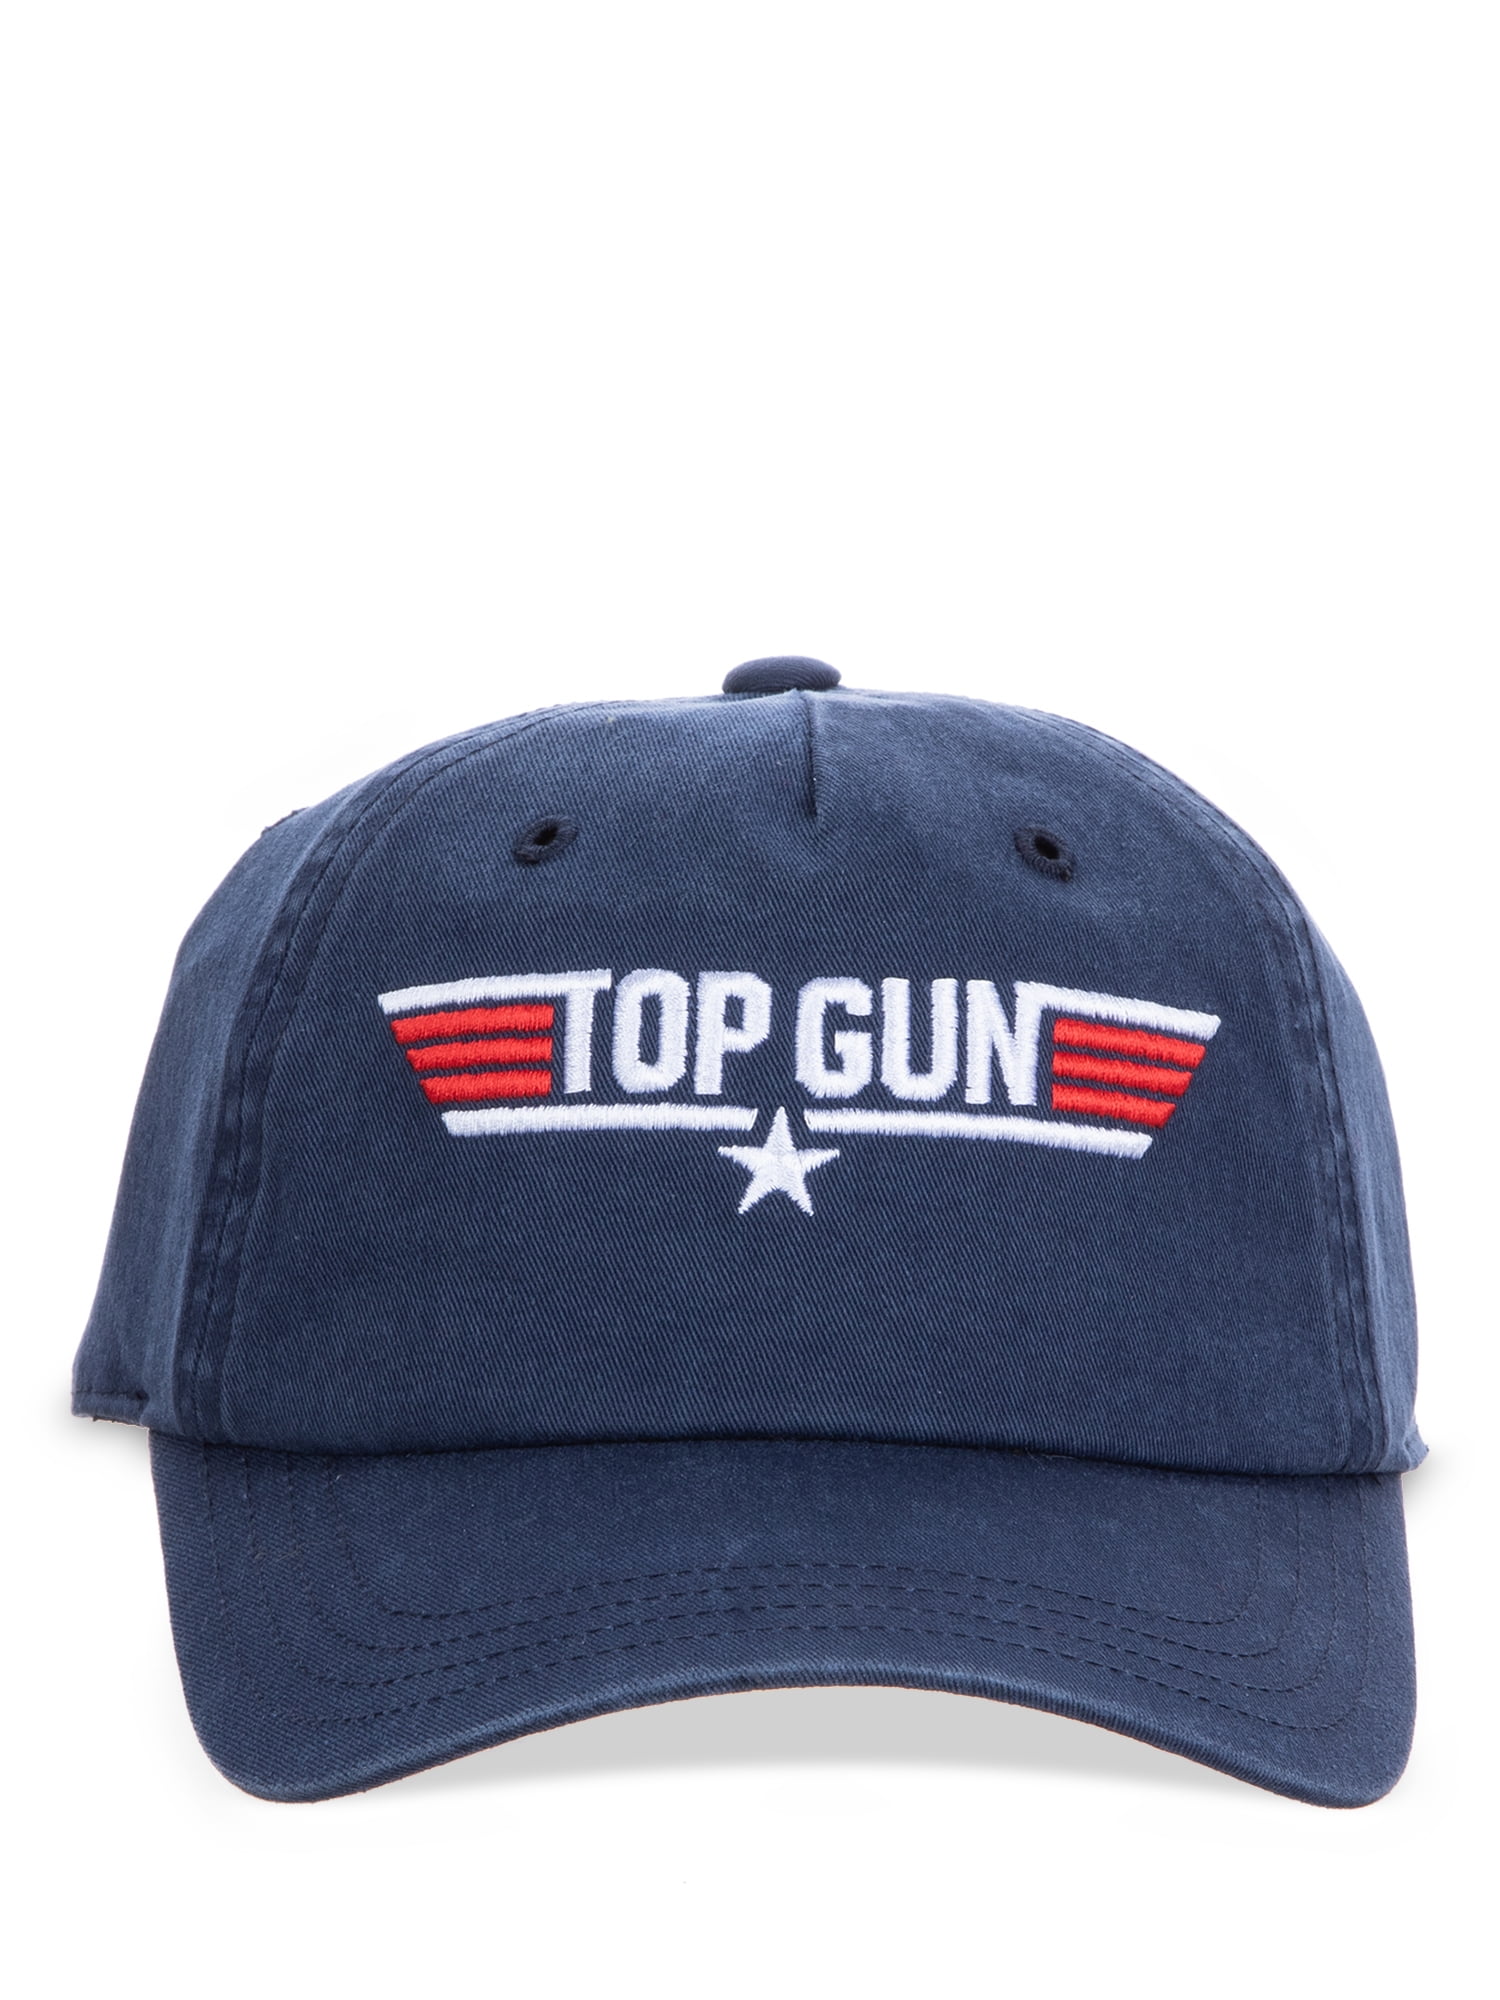 Top Gun Movie Hat